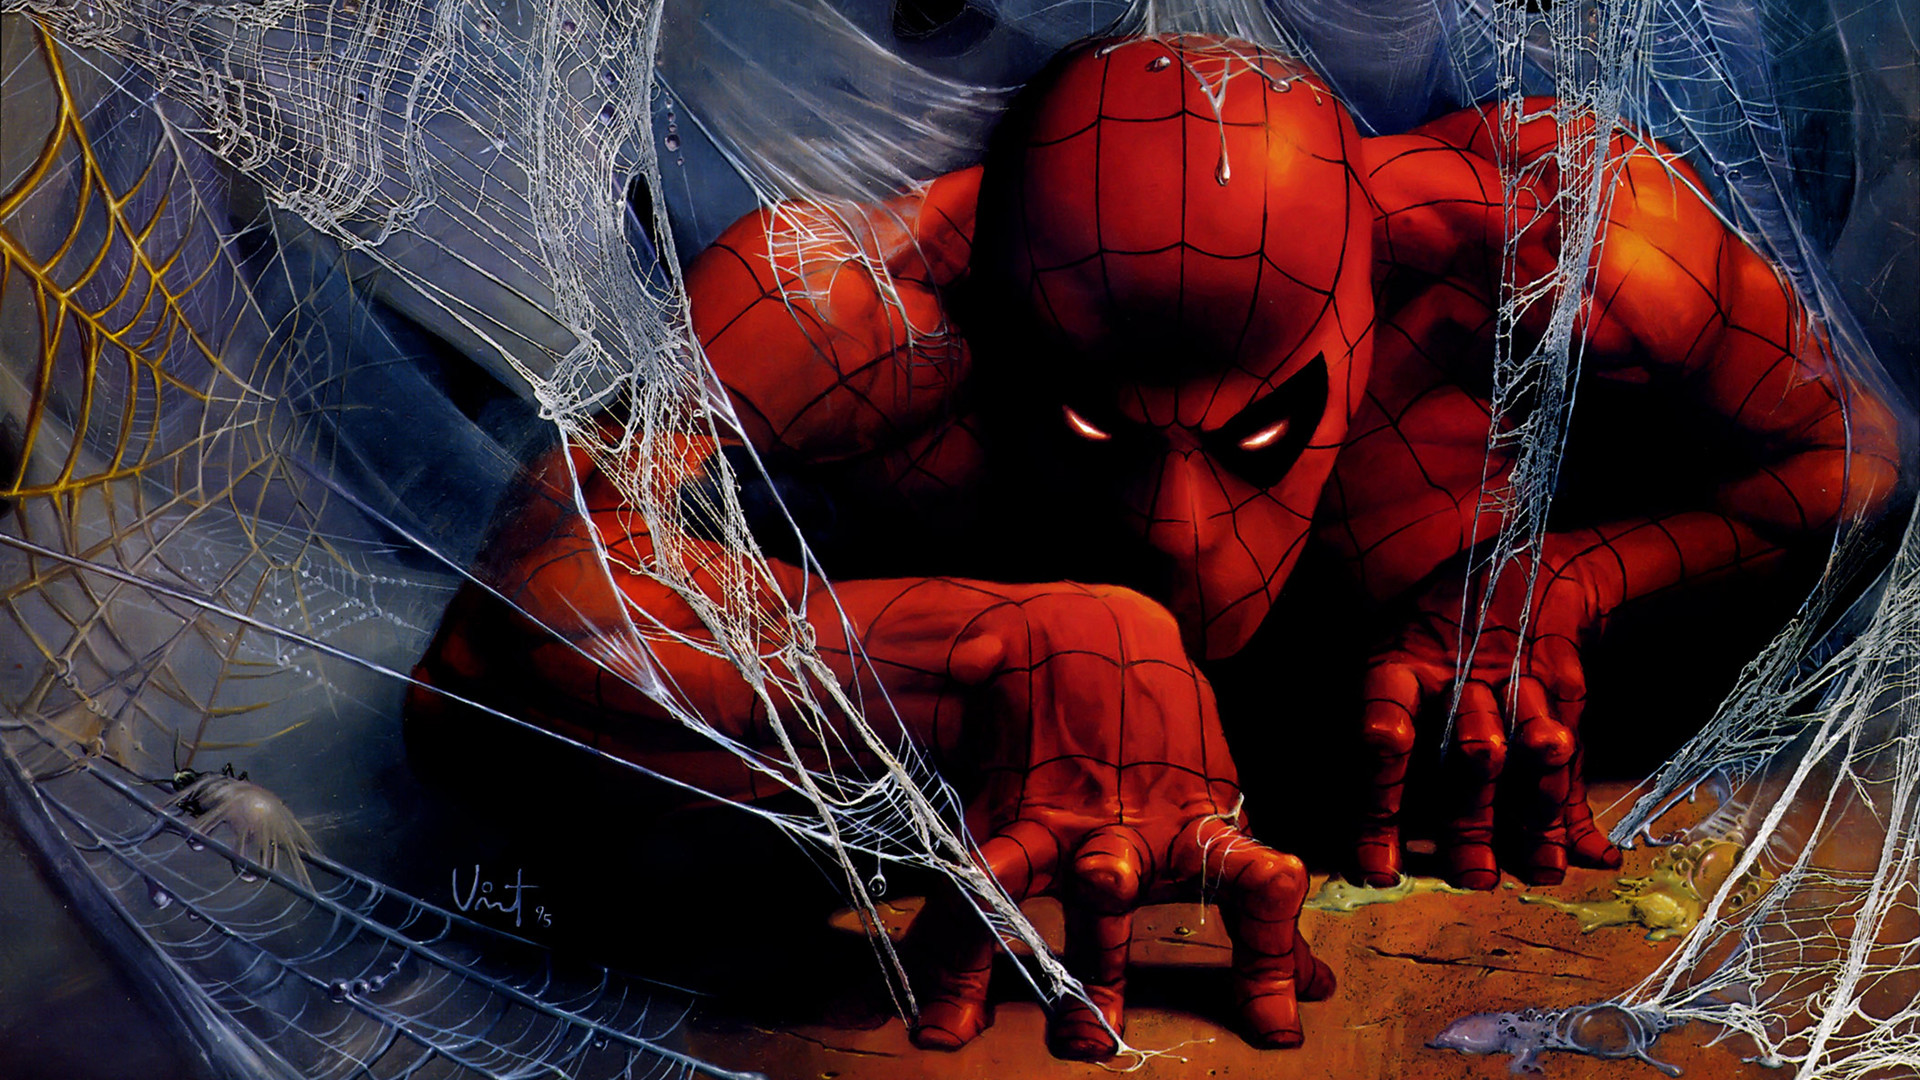 spiderman fond d'écran hd 1920x1080,homme araignée,personnage fictif,super héros,oeuvre de cg